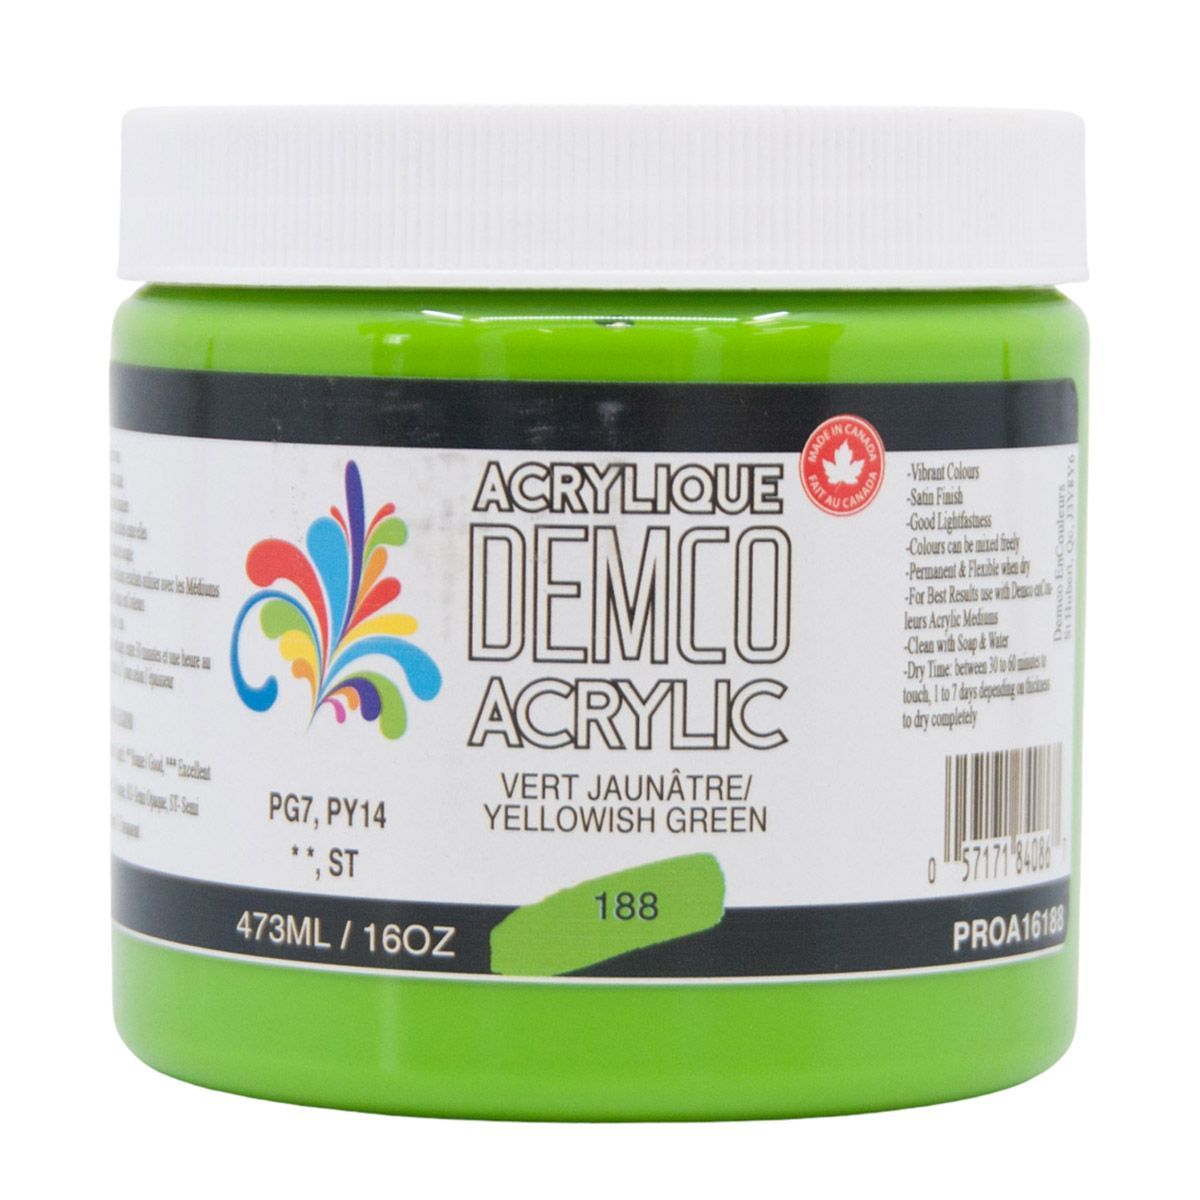 Demco Acrylic Yellowish Green 473ml/16oz